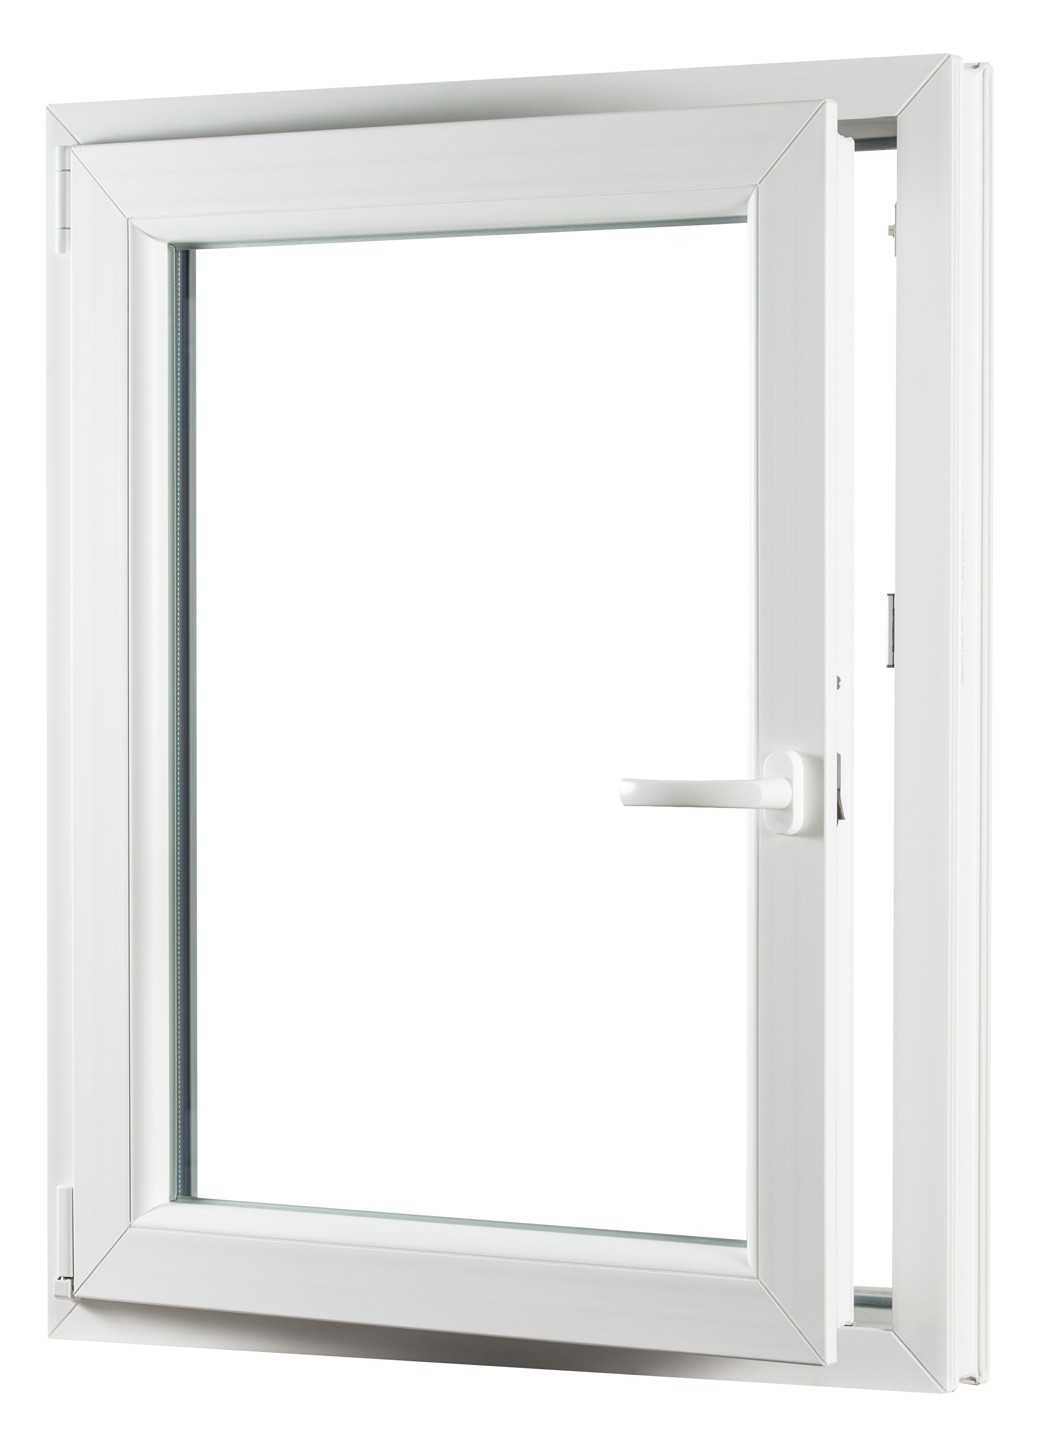 REHAU Smartline+ egyszárnyú műanyag ablak, bukó-nyíló balos - Ablakok-raktarrol.hu - 650 x 800.